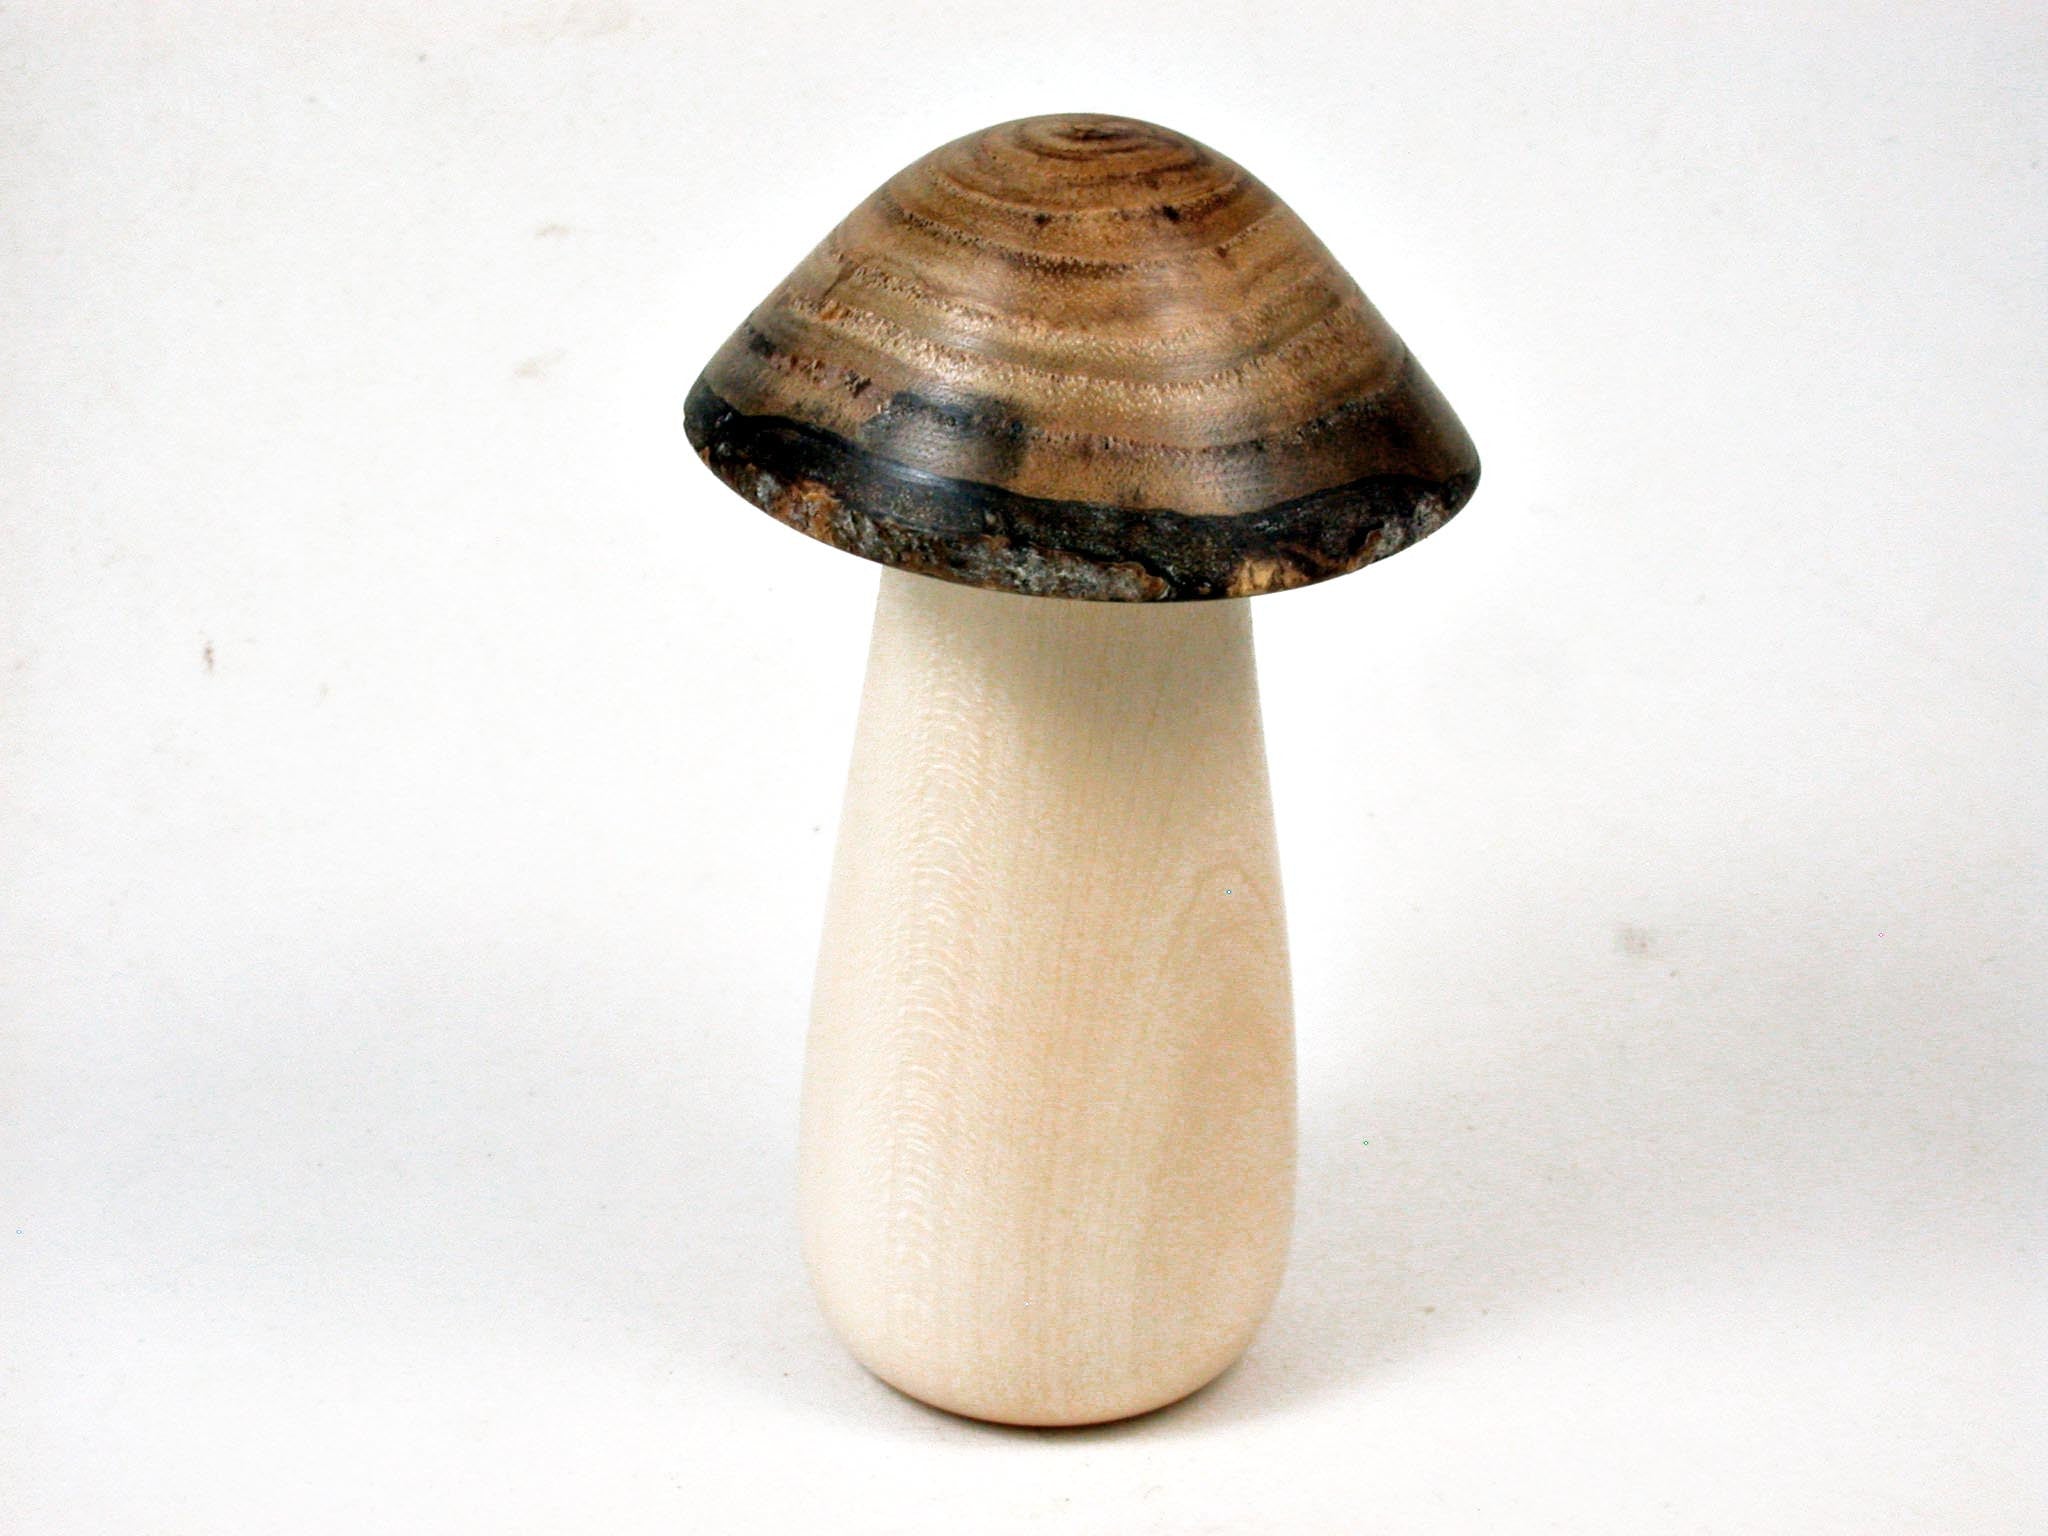 LV-3310  Holly & Japanese Pagoda Tree Wooden Mushroom Threaded Box, Jewelry Box-SCREW CAP